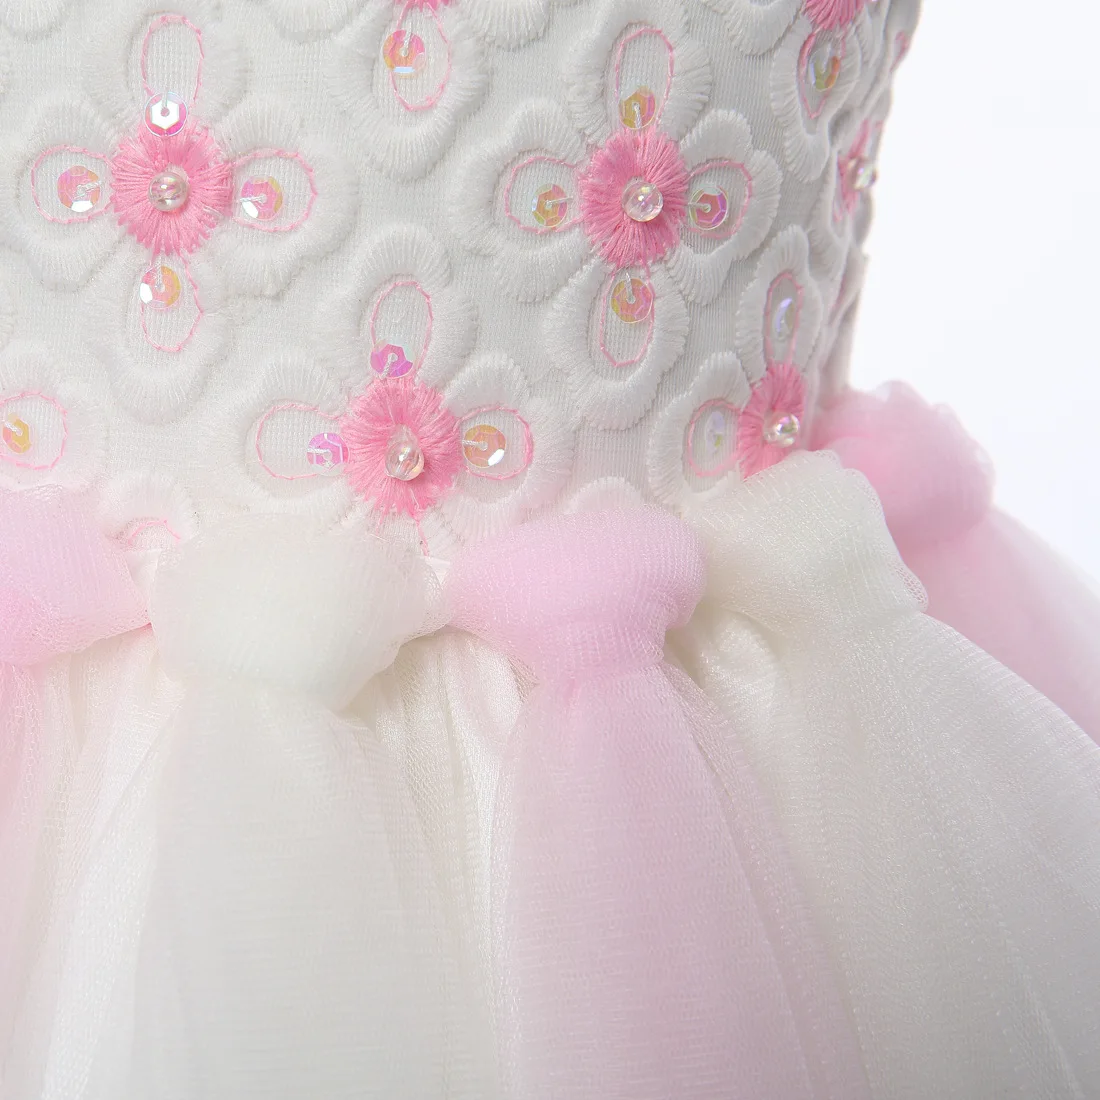 2019 Новый стиль с цветочной вышивкой для девочек газовое детское платье симпатичное платье принцессы платья для друзей невесты для детей